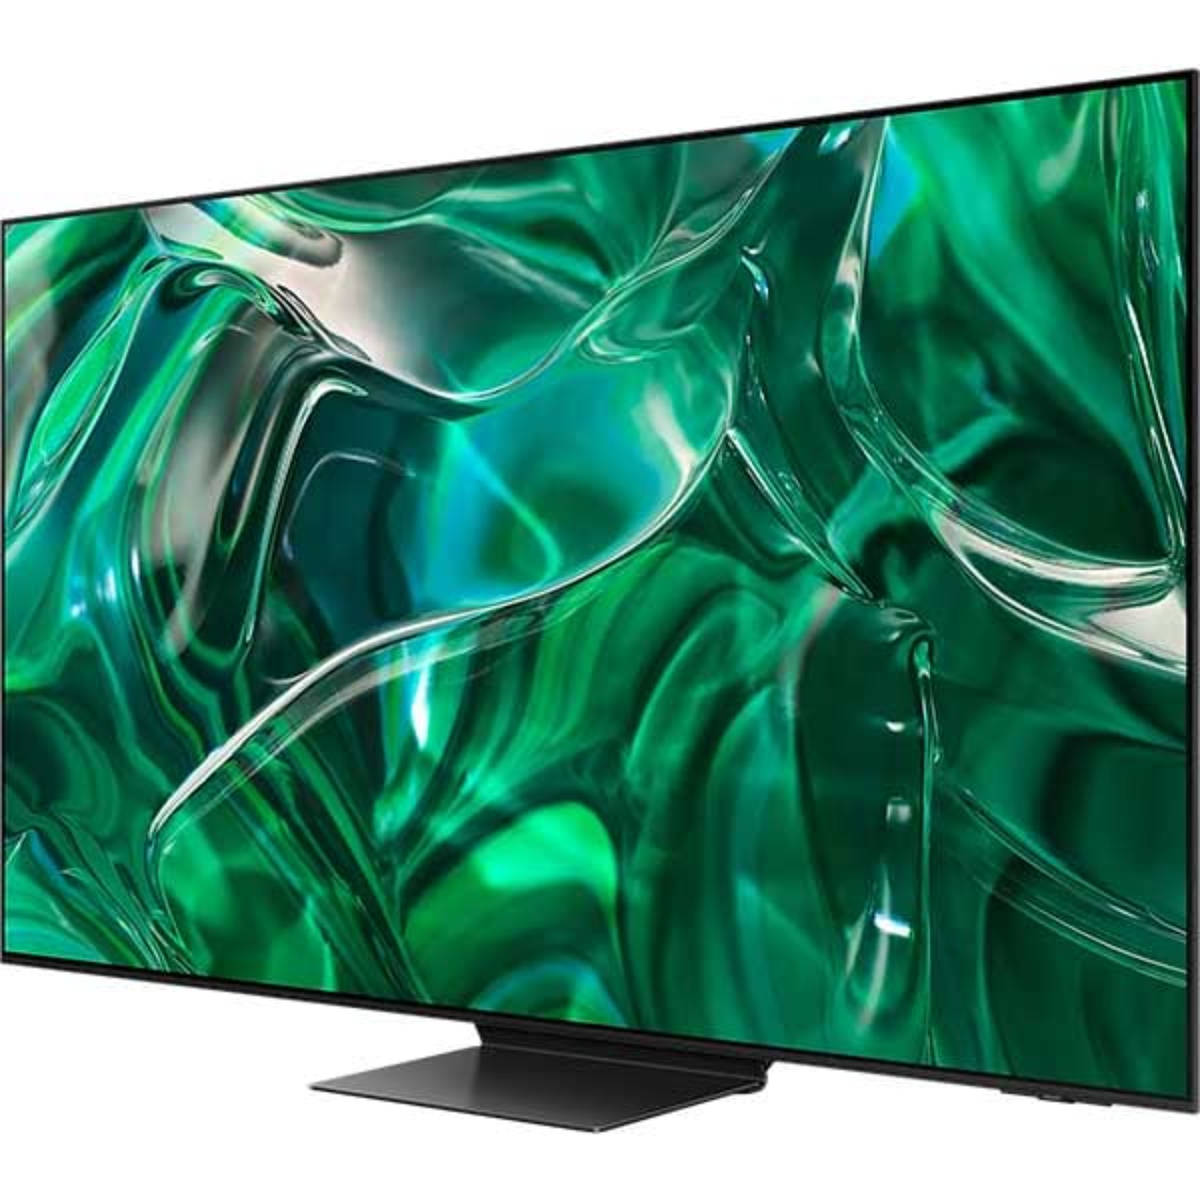 سامسونج تلفاز ذكي 65 بوصة OLED 4K، تيتانيوم أسود، QA65S95BAUXZN